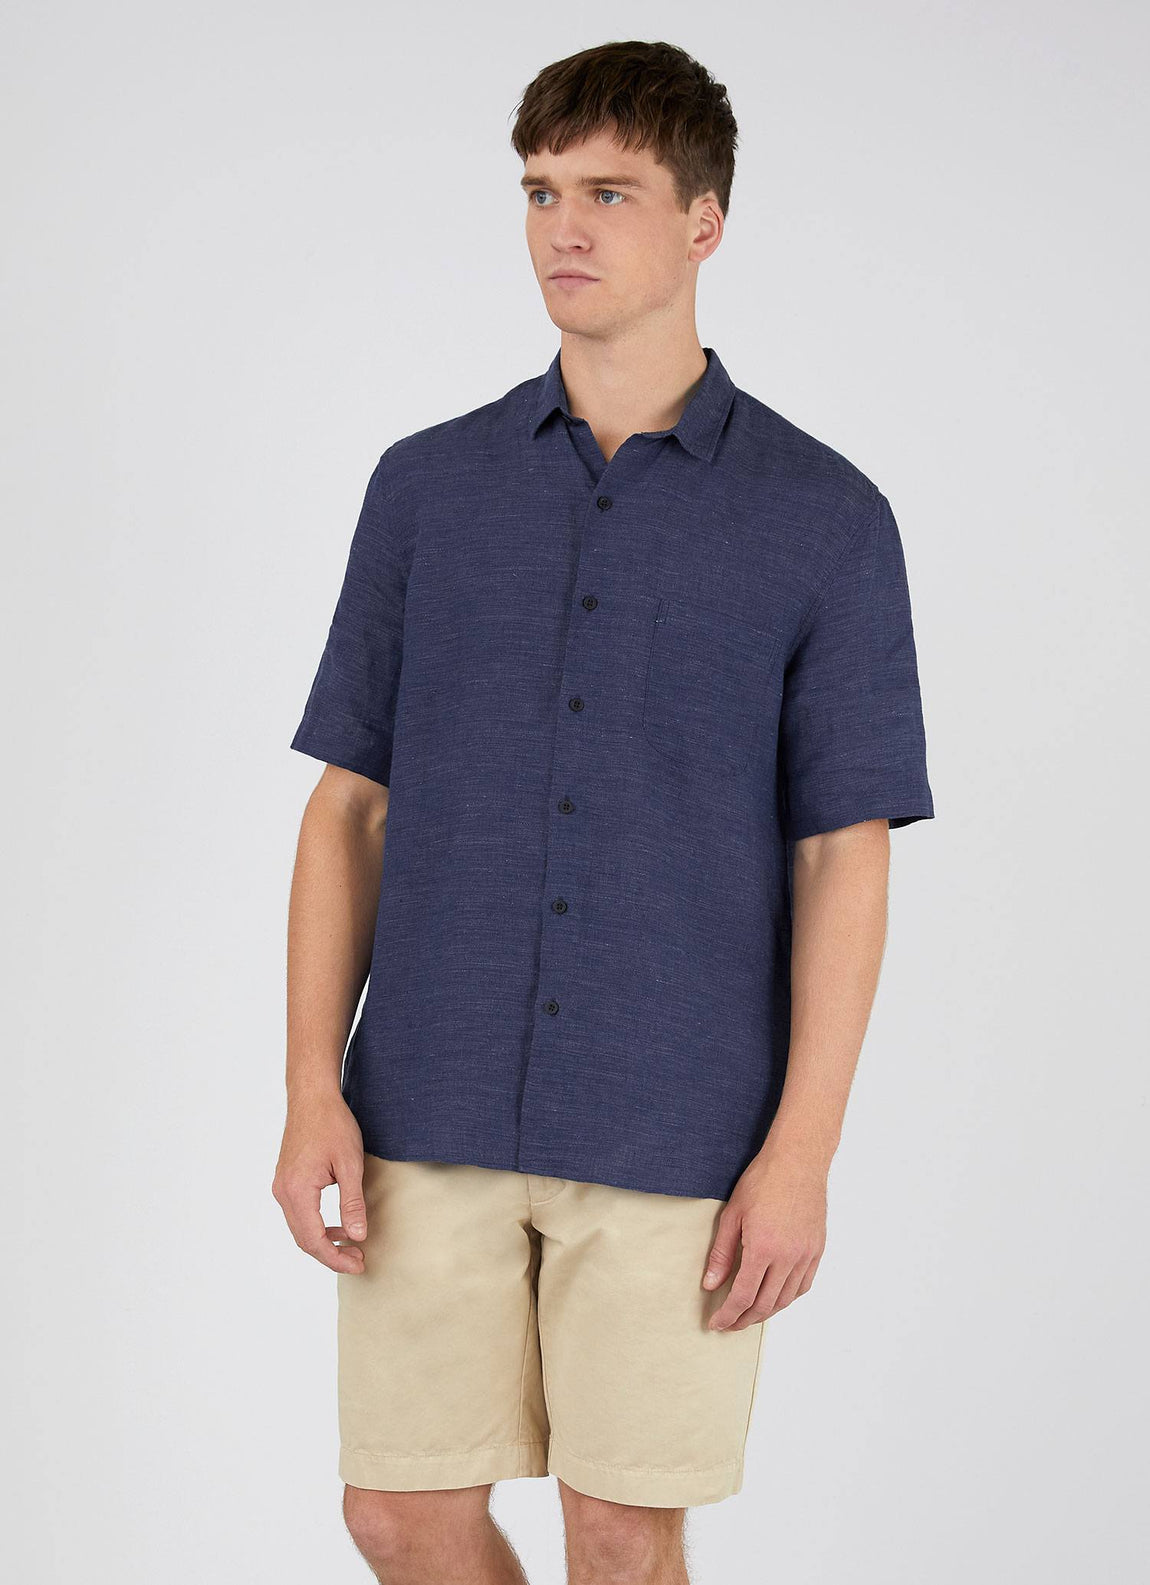 Men's Linen Short Sleeve Shirt in Navy Melange